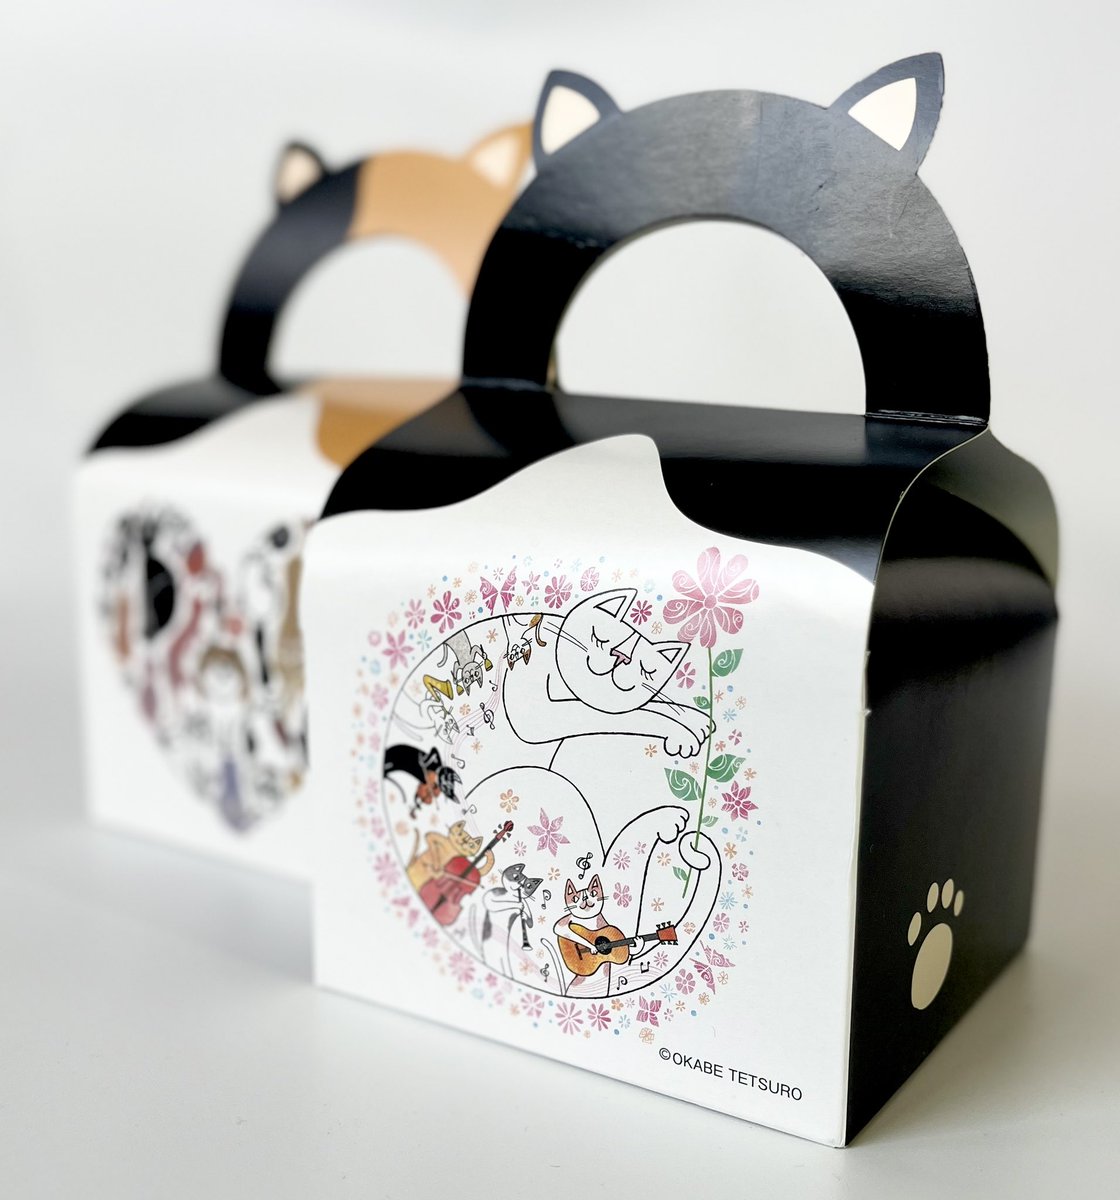 Atelier de NAKAYAMA
『お菓子をもっと楽しく』

猫いちごタルト

はちわれ猫をモチーフにした猫型パッケージのタルトが新登場！OKABE TETSUROさんのかわいい猫のイラスト付きです。
ホワイトチョコを練り込んだ生地にストロベリージャムを合わせた『いちごタルト』を詰めあわせました🍓
#中山製菓